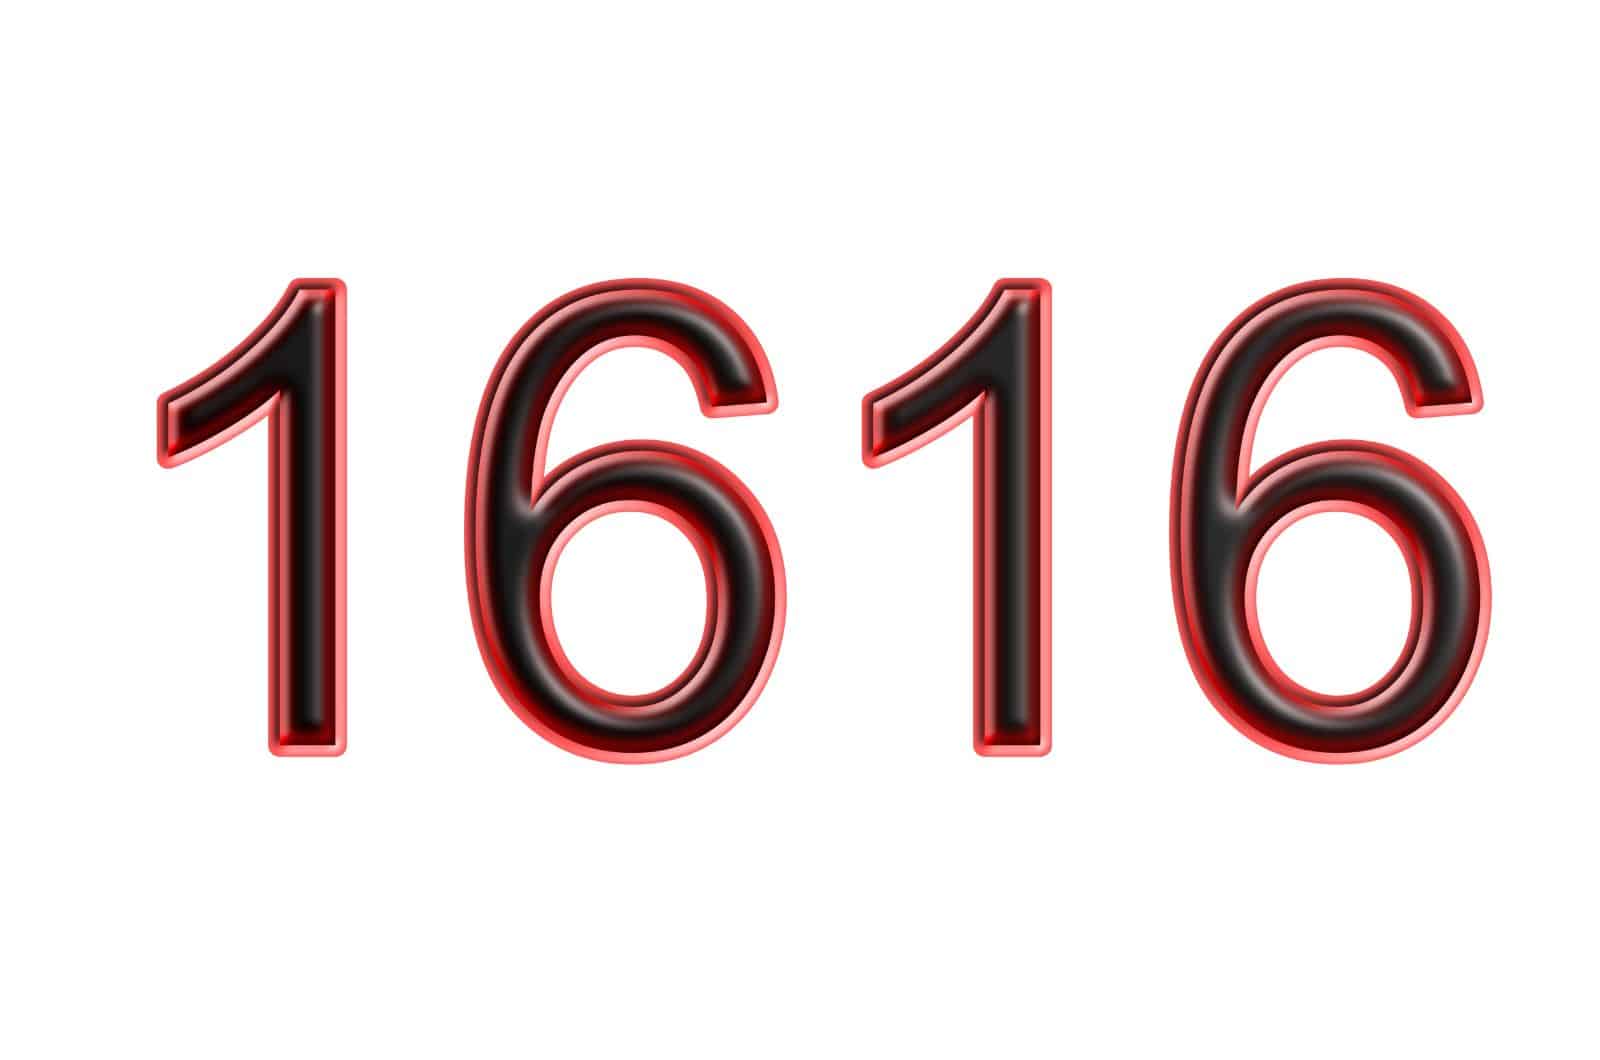 rote Zahl 1616 auf weißem Hintergrund